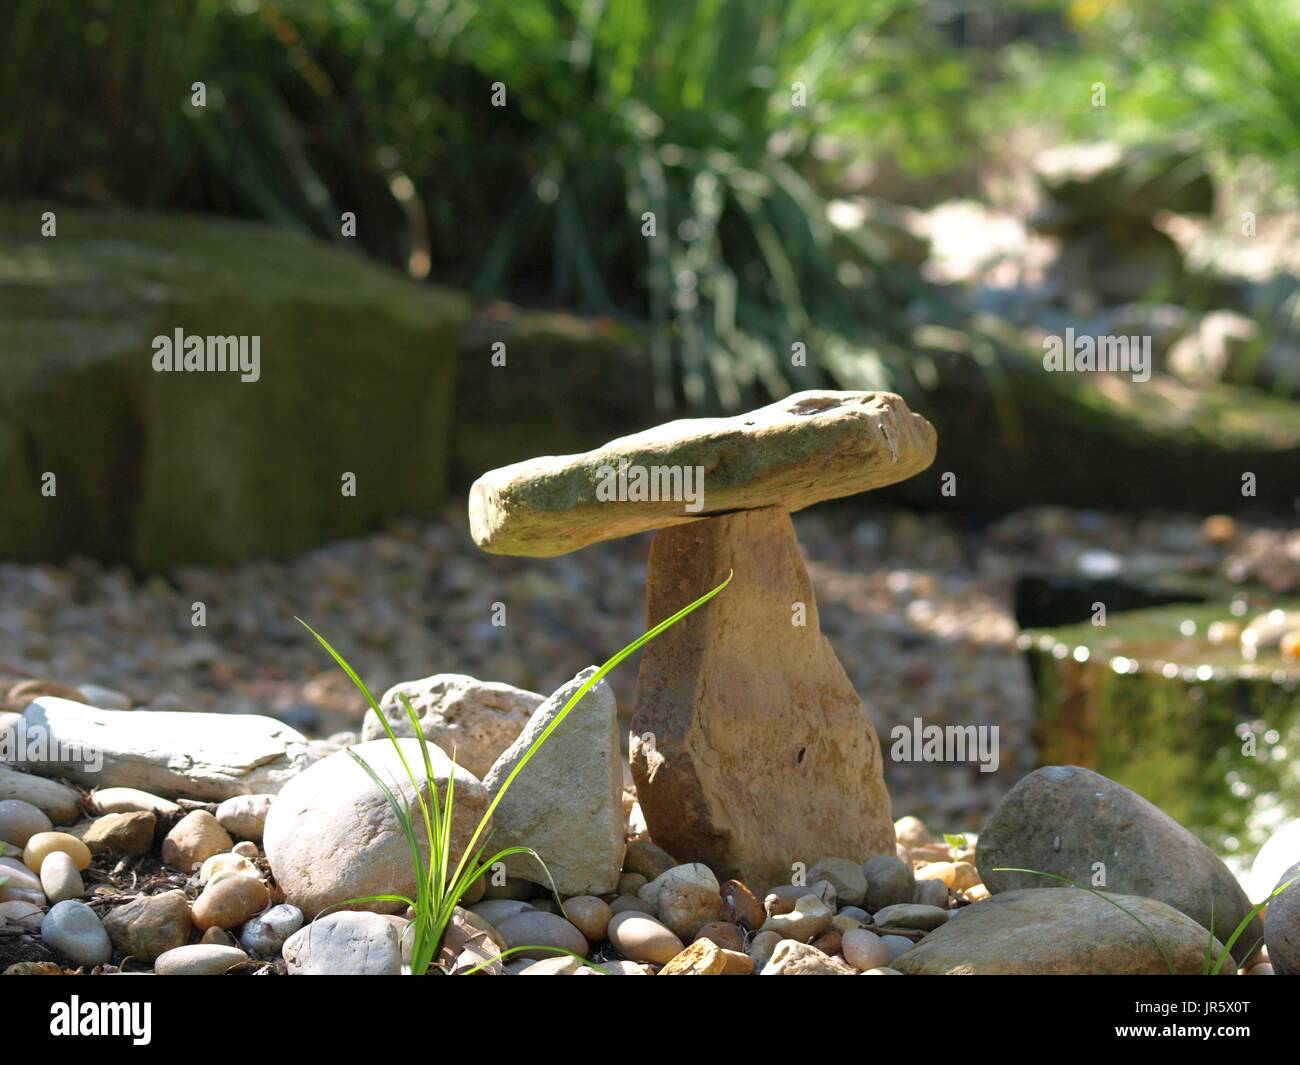 Jardin zen rock en équilibre sur un autre rocher, avec des brins d'herbe en premier plan Banque D'Images